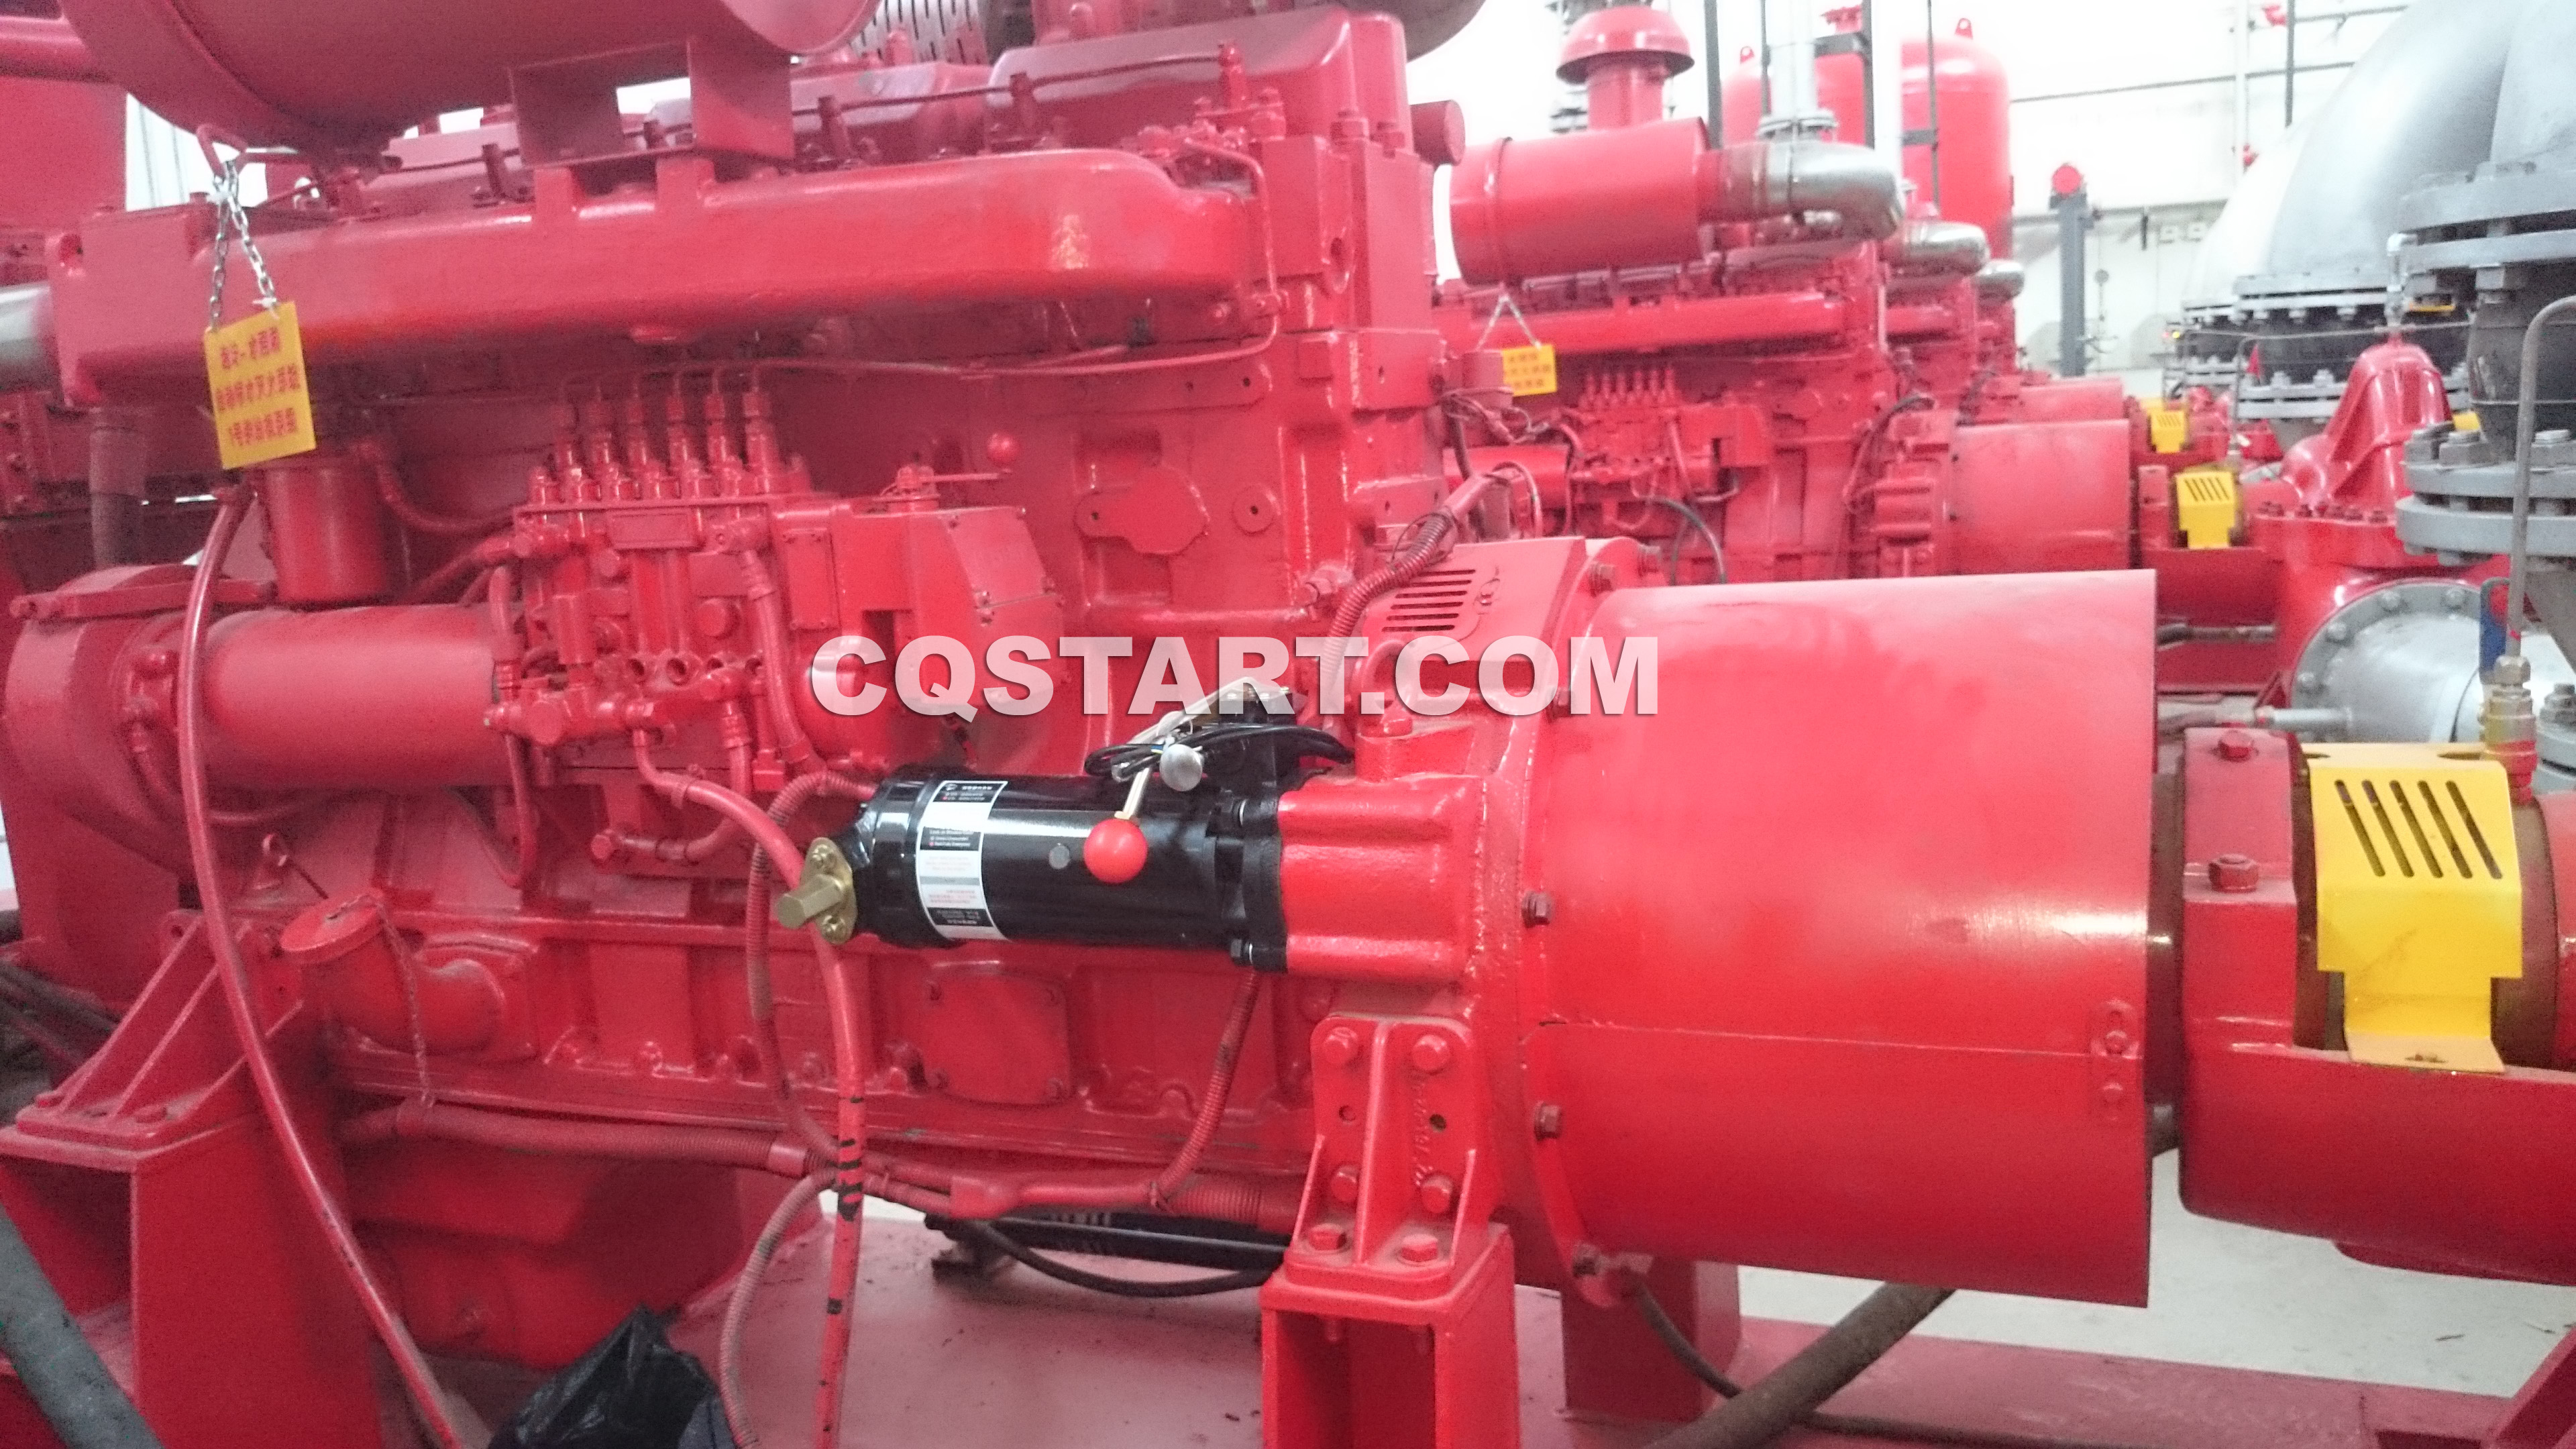 Cqstart mechanical spring starter for fire pumps